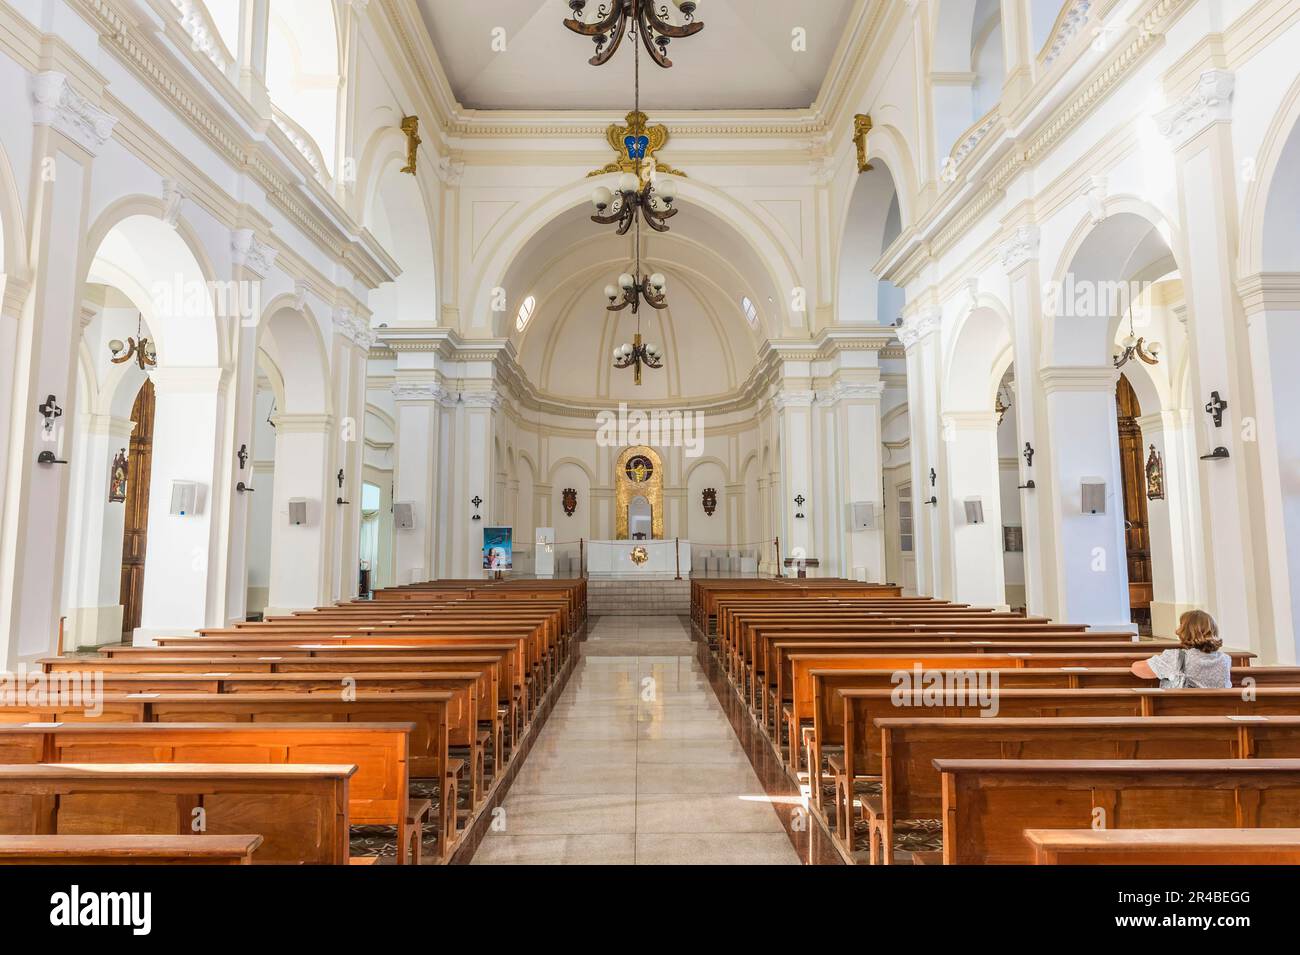 Cathédrale de Santo Antonio, Diamantina, Minas Gerais, Brésil Banque D'Images